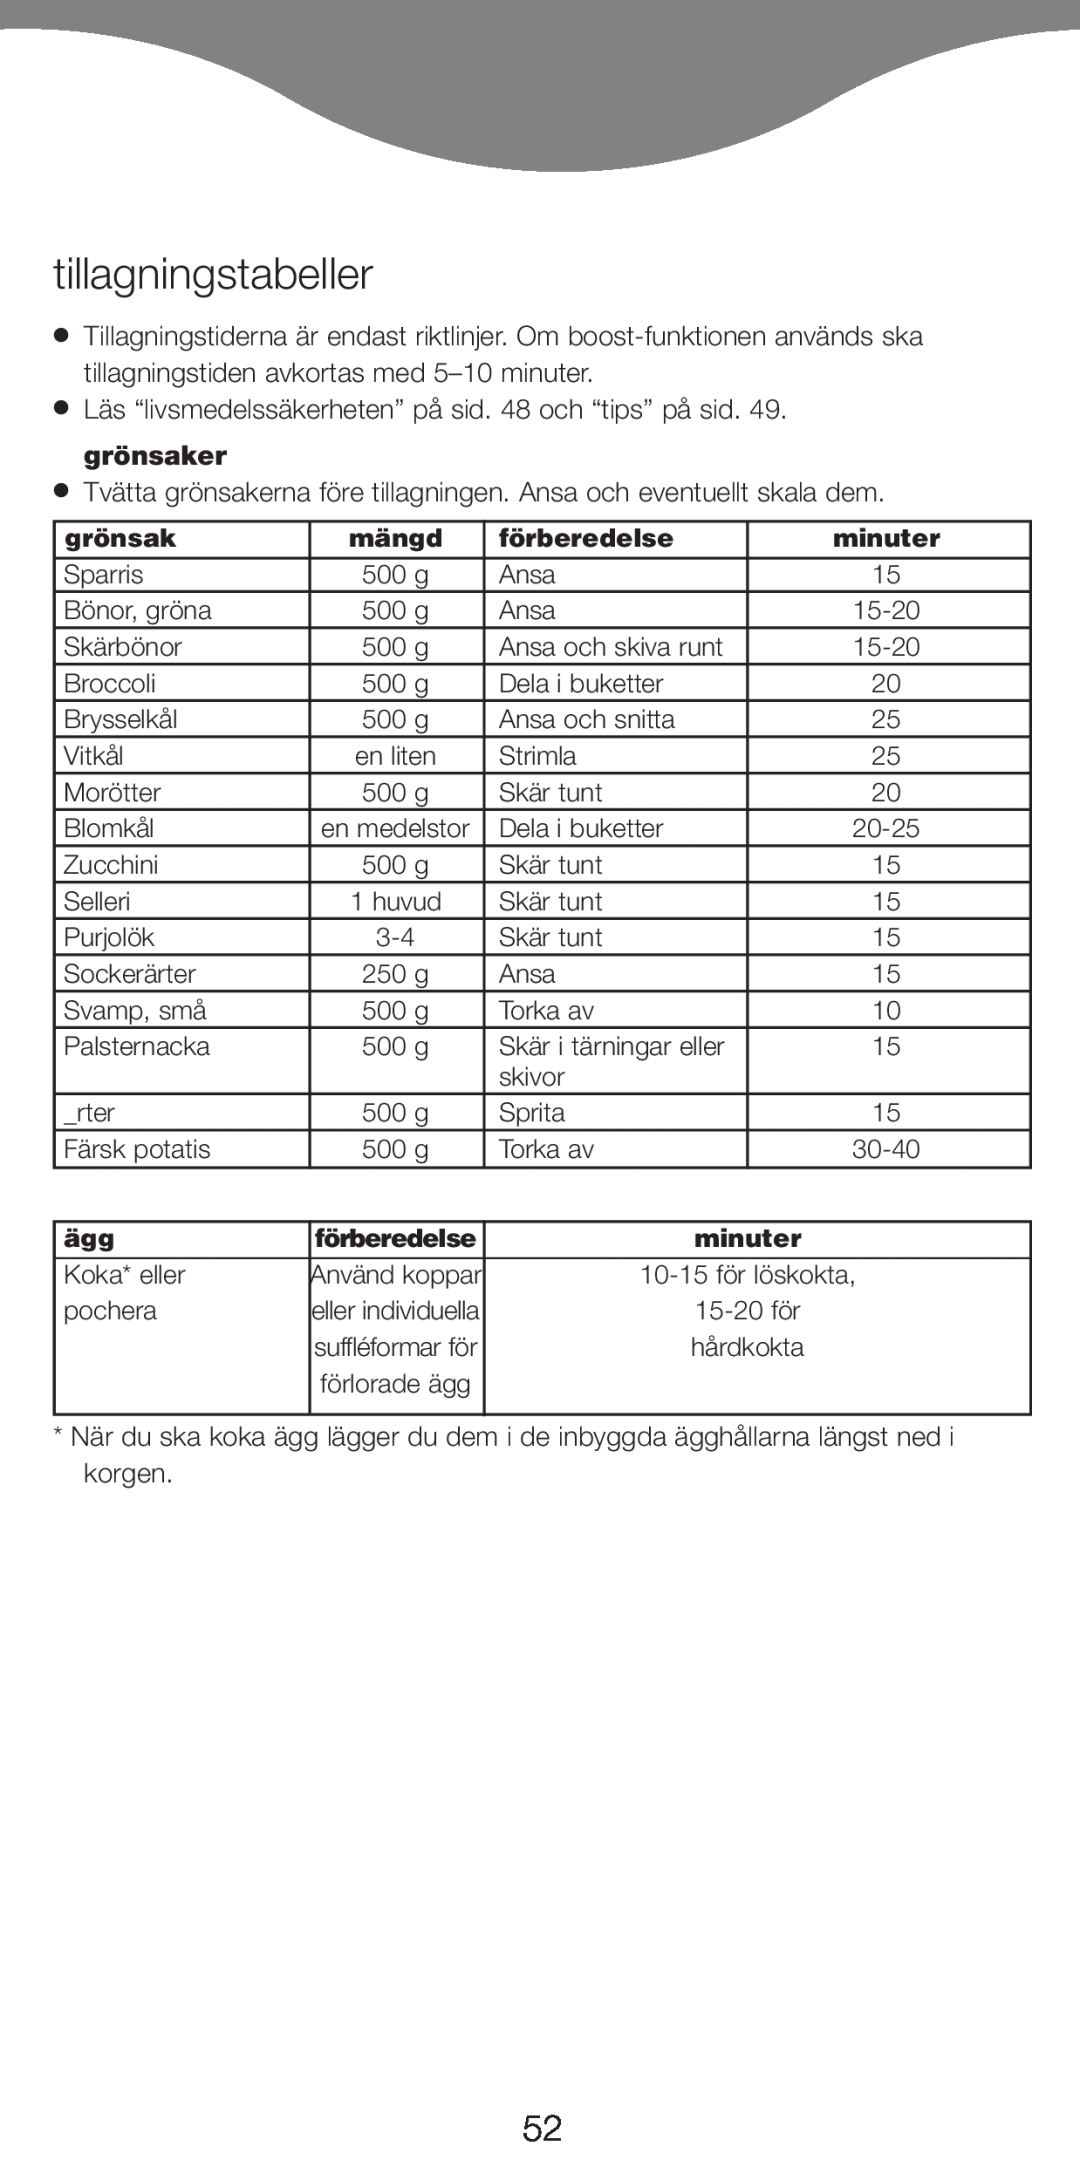 Kenwood FS620 manual tillagningstabeller, Använd koppar, eller individuella, suffléformar för 